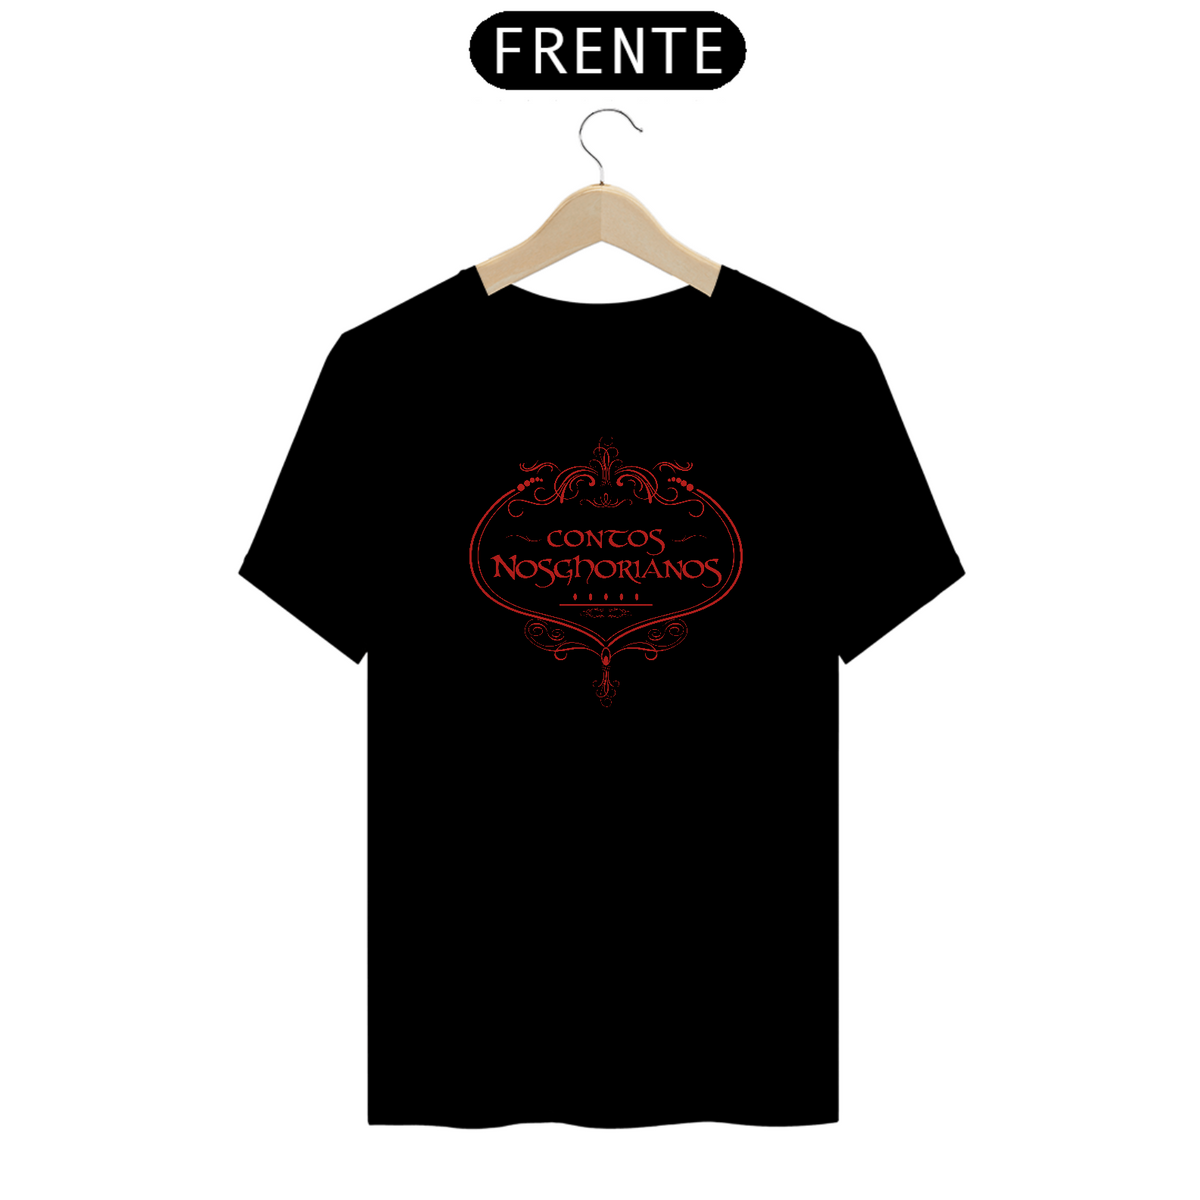 Nome do produto: Camiseta de Brasão VERMELHO de ARTONGEL de Nosghor Seremcores 